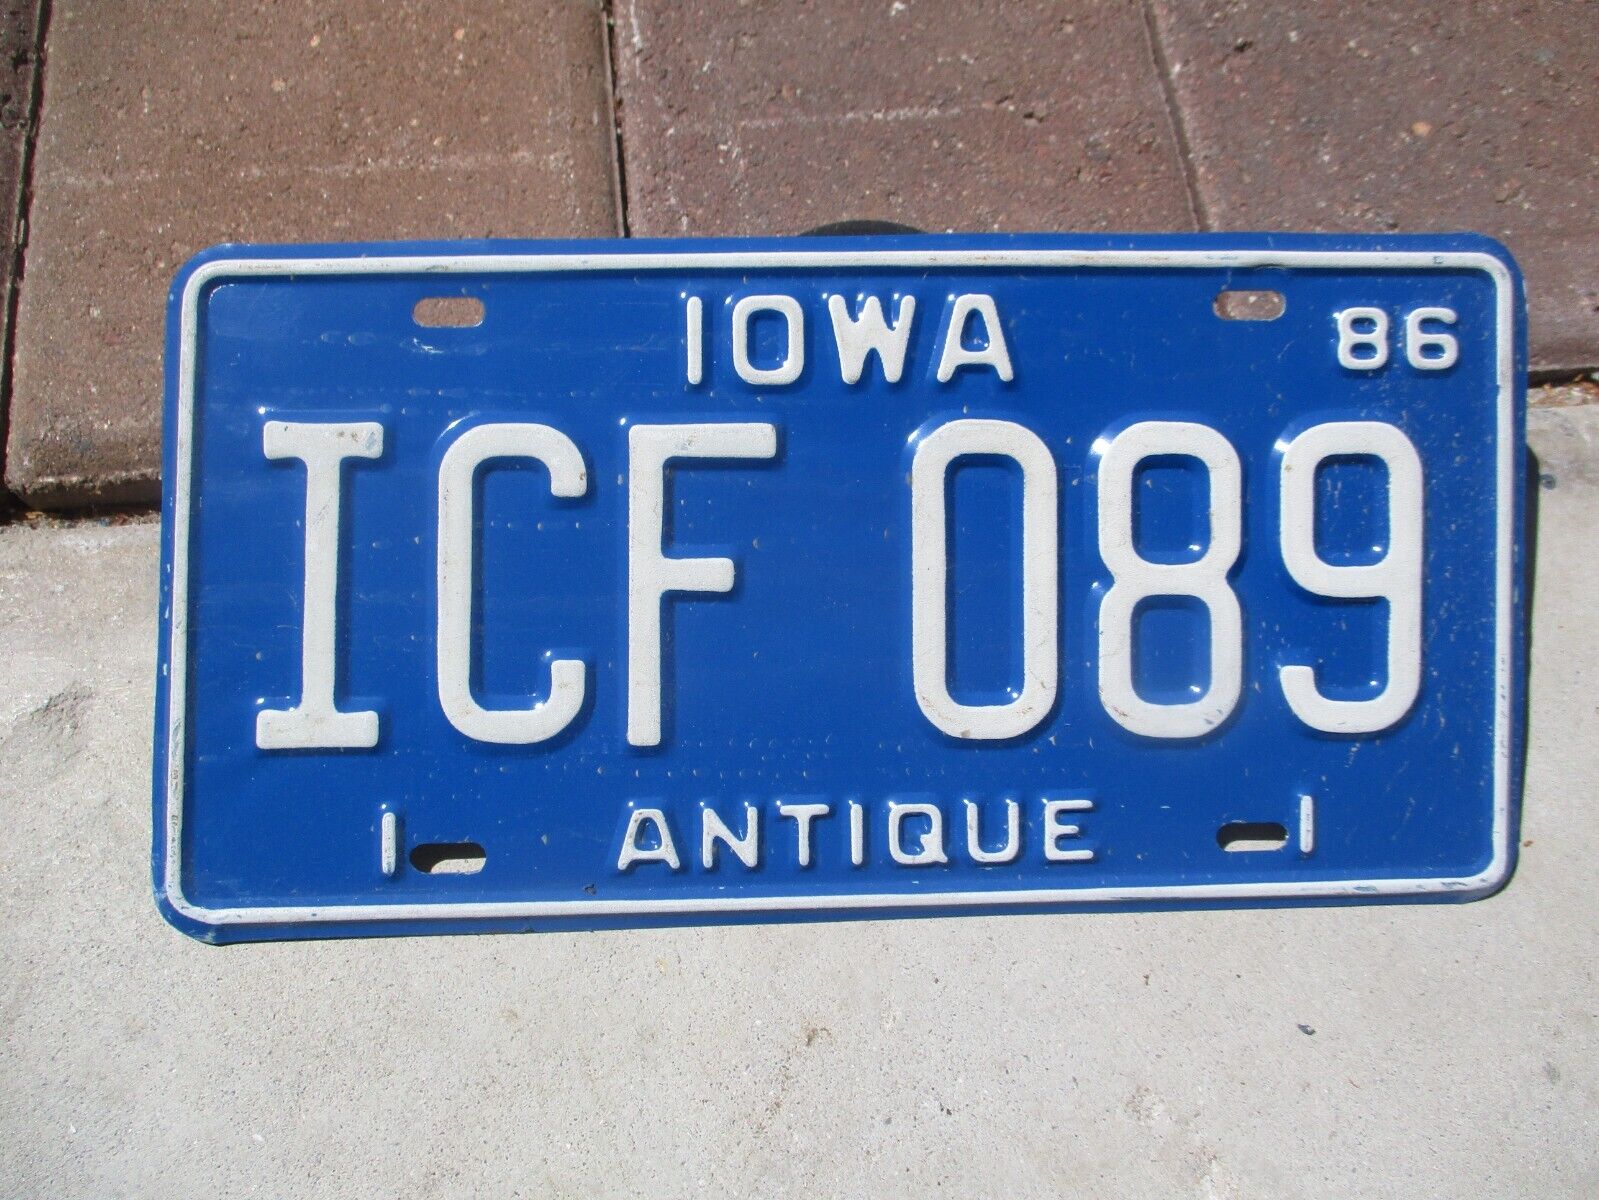 Iowa 1986 Antique license plate #  ICF 089